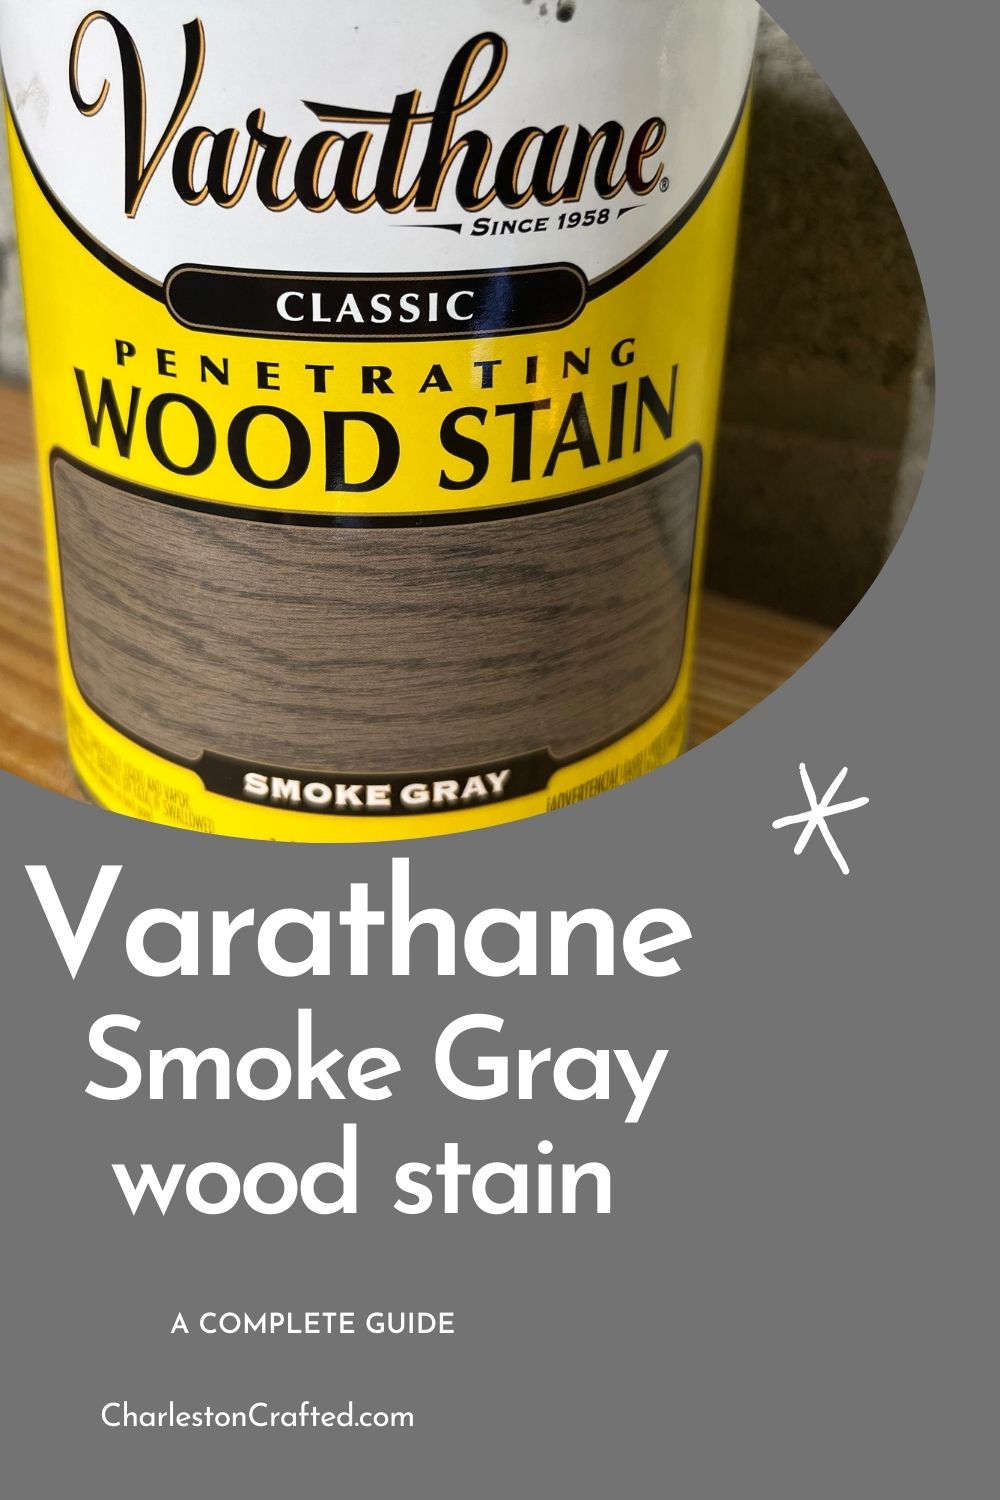 Purple Wood Textures. Printables  Purple wood stain, Staining wood, Wood  branding